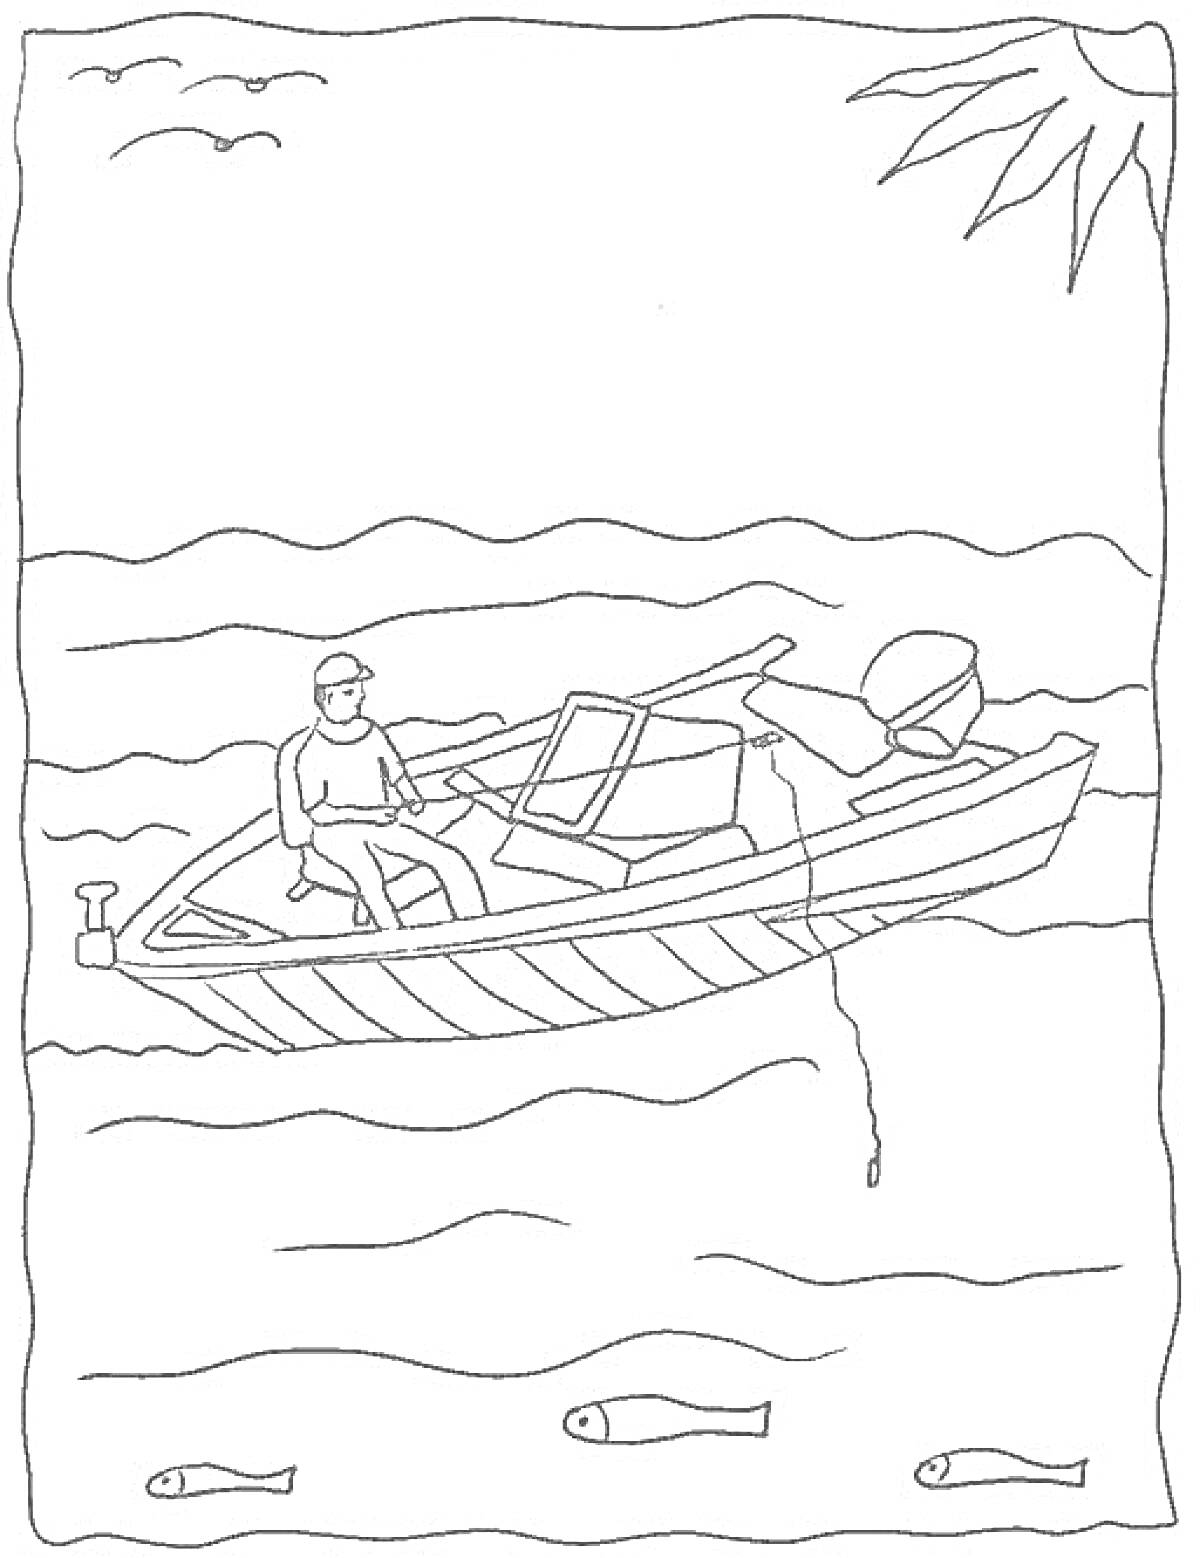 Раскраска Рыбак в лодке на реке, с рыболовной удочкой, рыбы в воде, солнце и птицы на горизонте